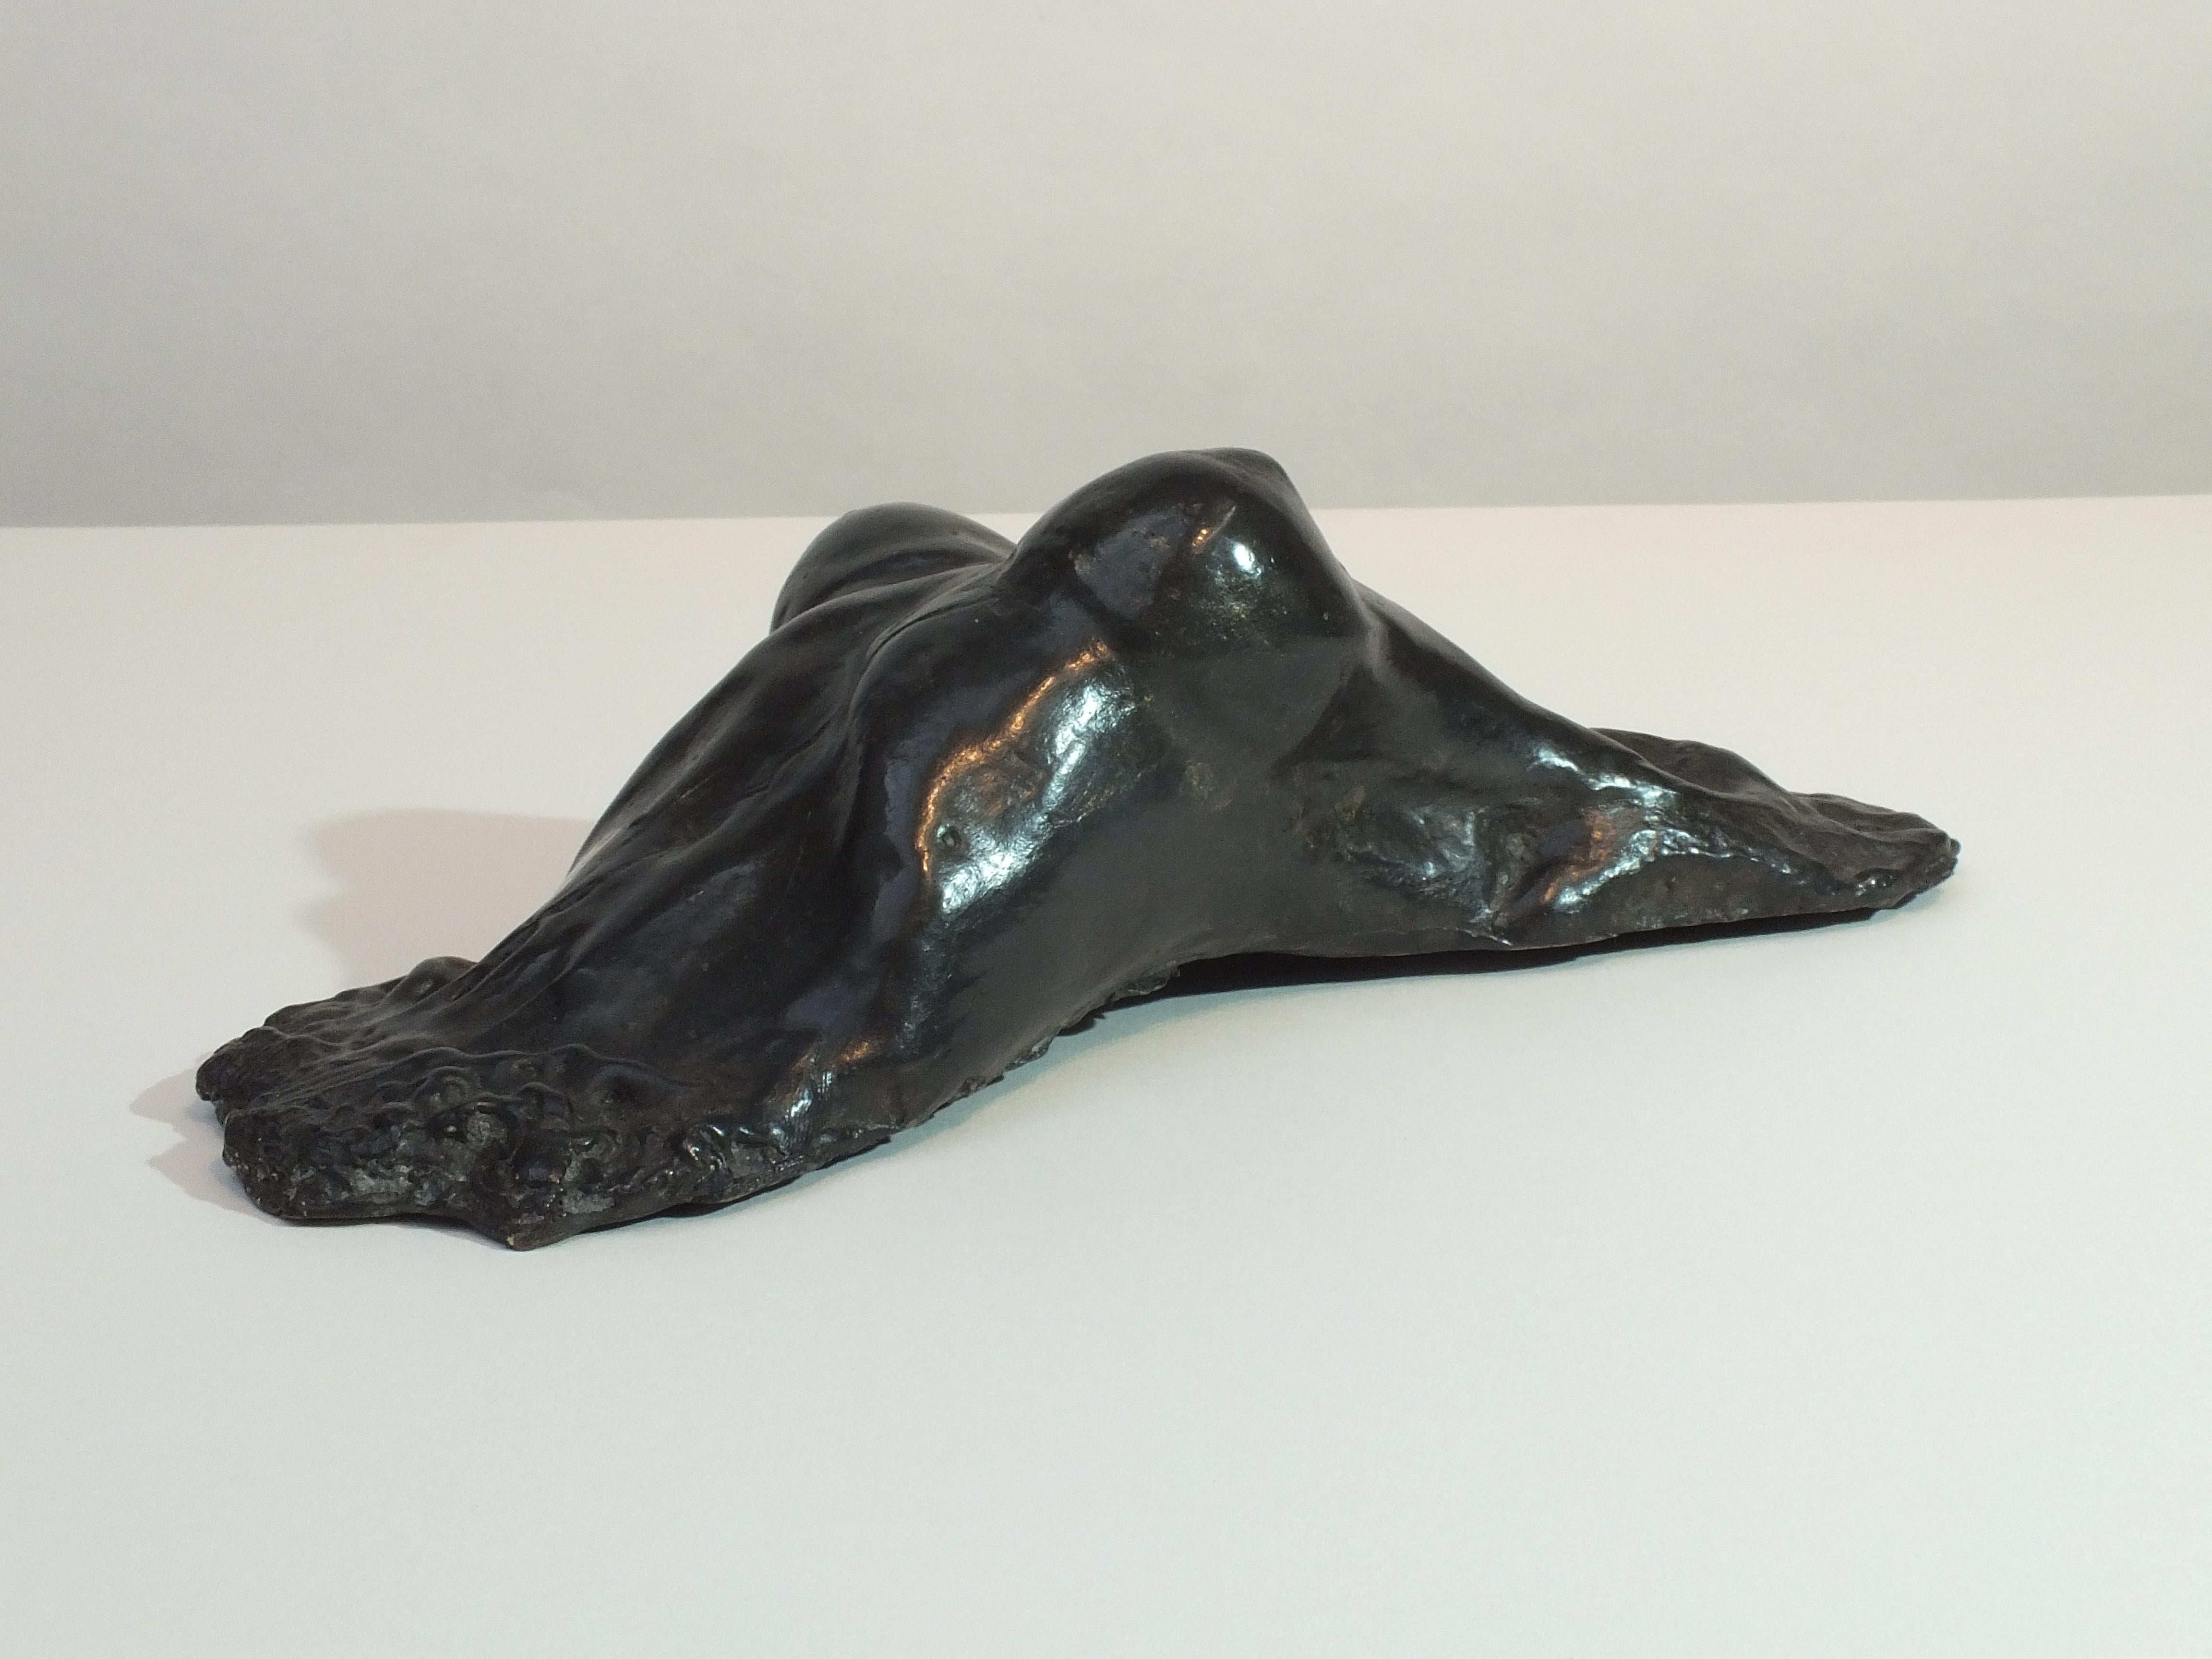 Zeitgenössische Skulptur „Emergent Form“ aus Bronzeguss – Sculpture von Tim Rawlins